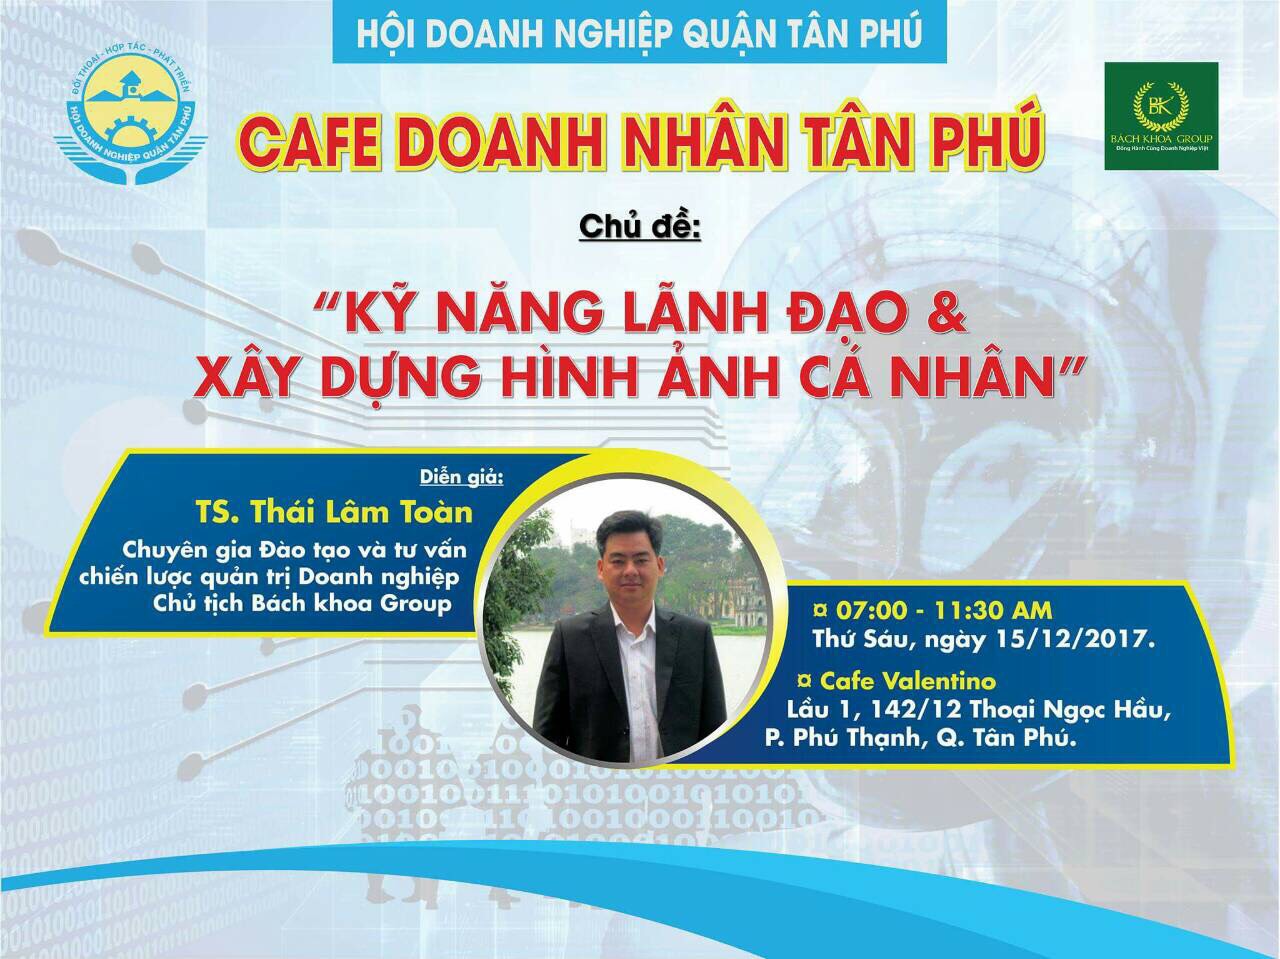 Chương trình "Cà phê doanh nhân Tân Phú tháng 12 - Kỹ năng lãnh đạo và xây dựng hình ảnh cá nhân"